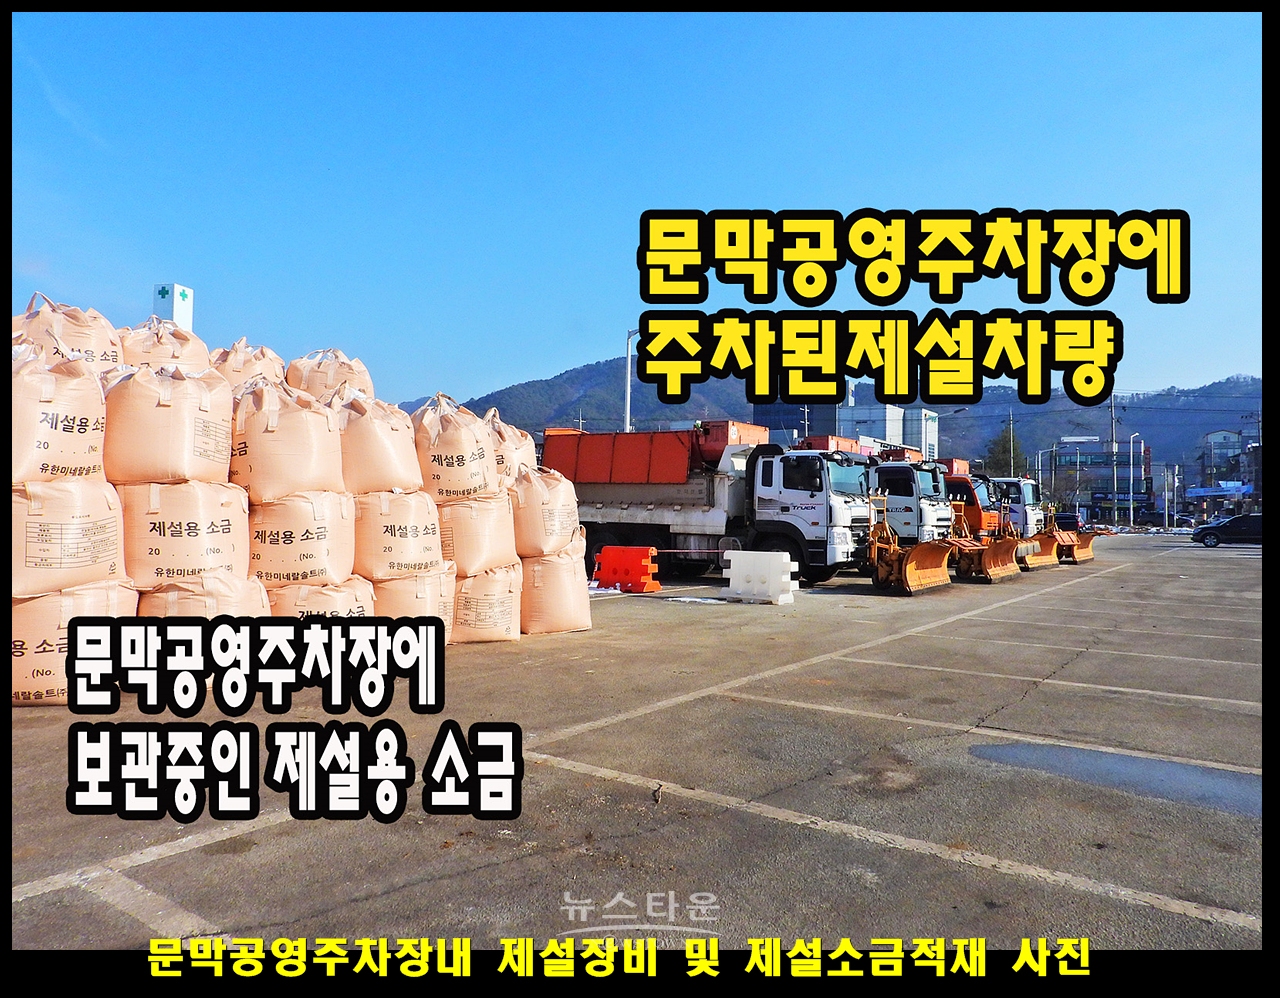 문막공영주차장내 대형제설장비 차량 및 제설소금적재 사진